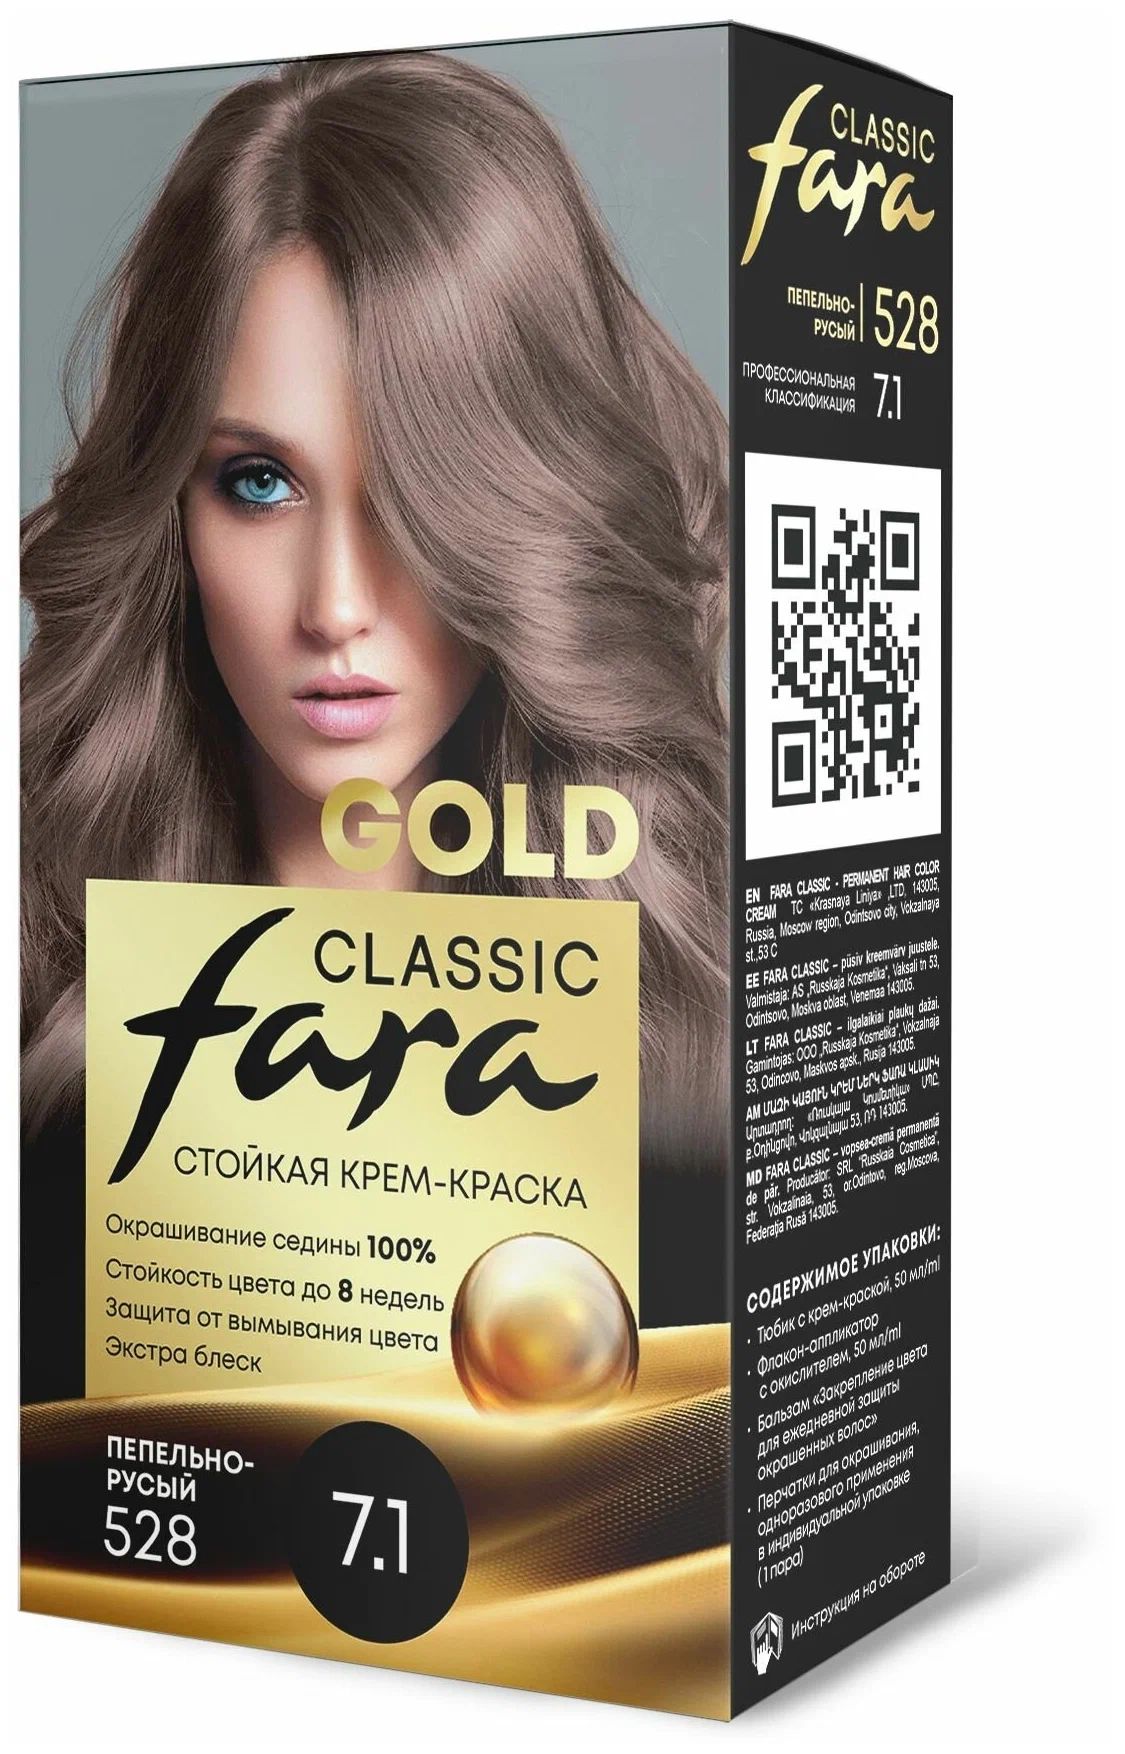 Крем-краска для волос Fara Classic Gold 528 пепельно-русый 7.1, 140 г русская драма и литературный процесс